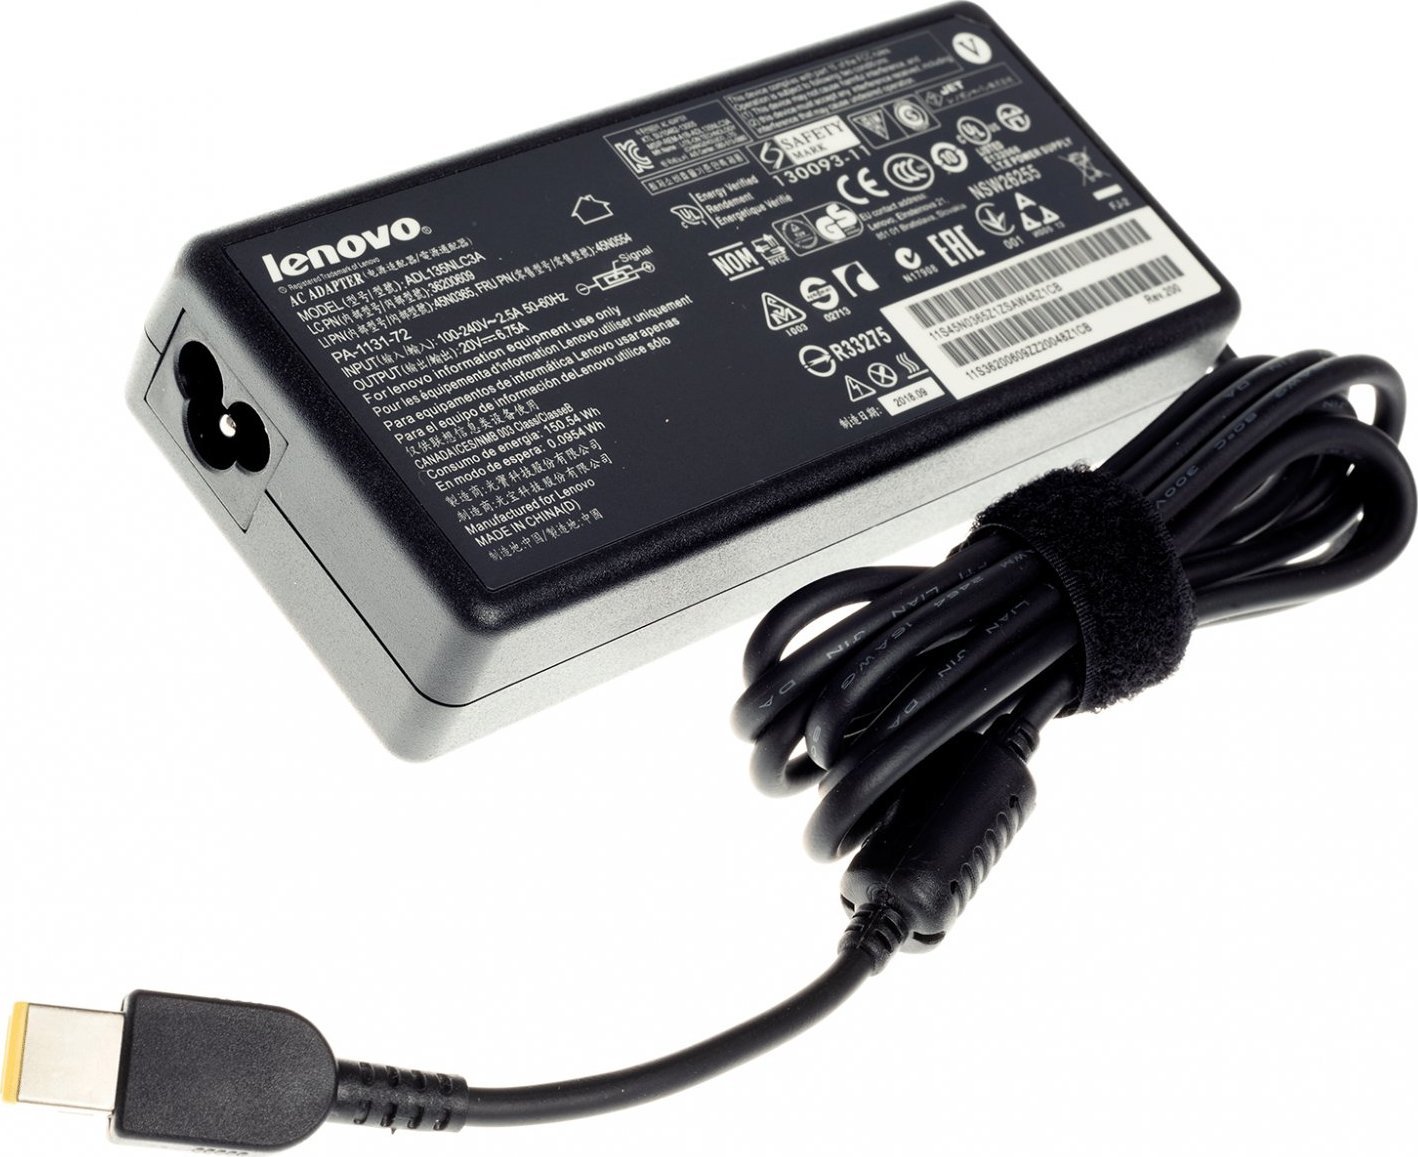 Originál AC Adapter pre Lenovo 45N0361, 45N0362, 45N0363, 45N0364 20V 6.75A 135W